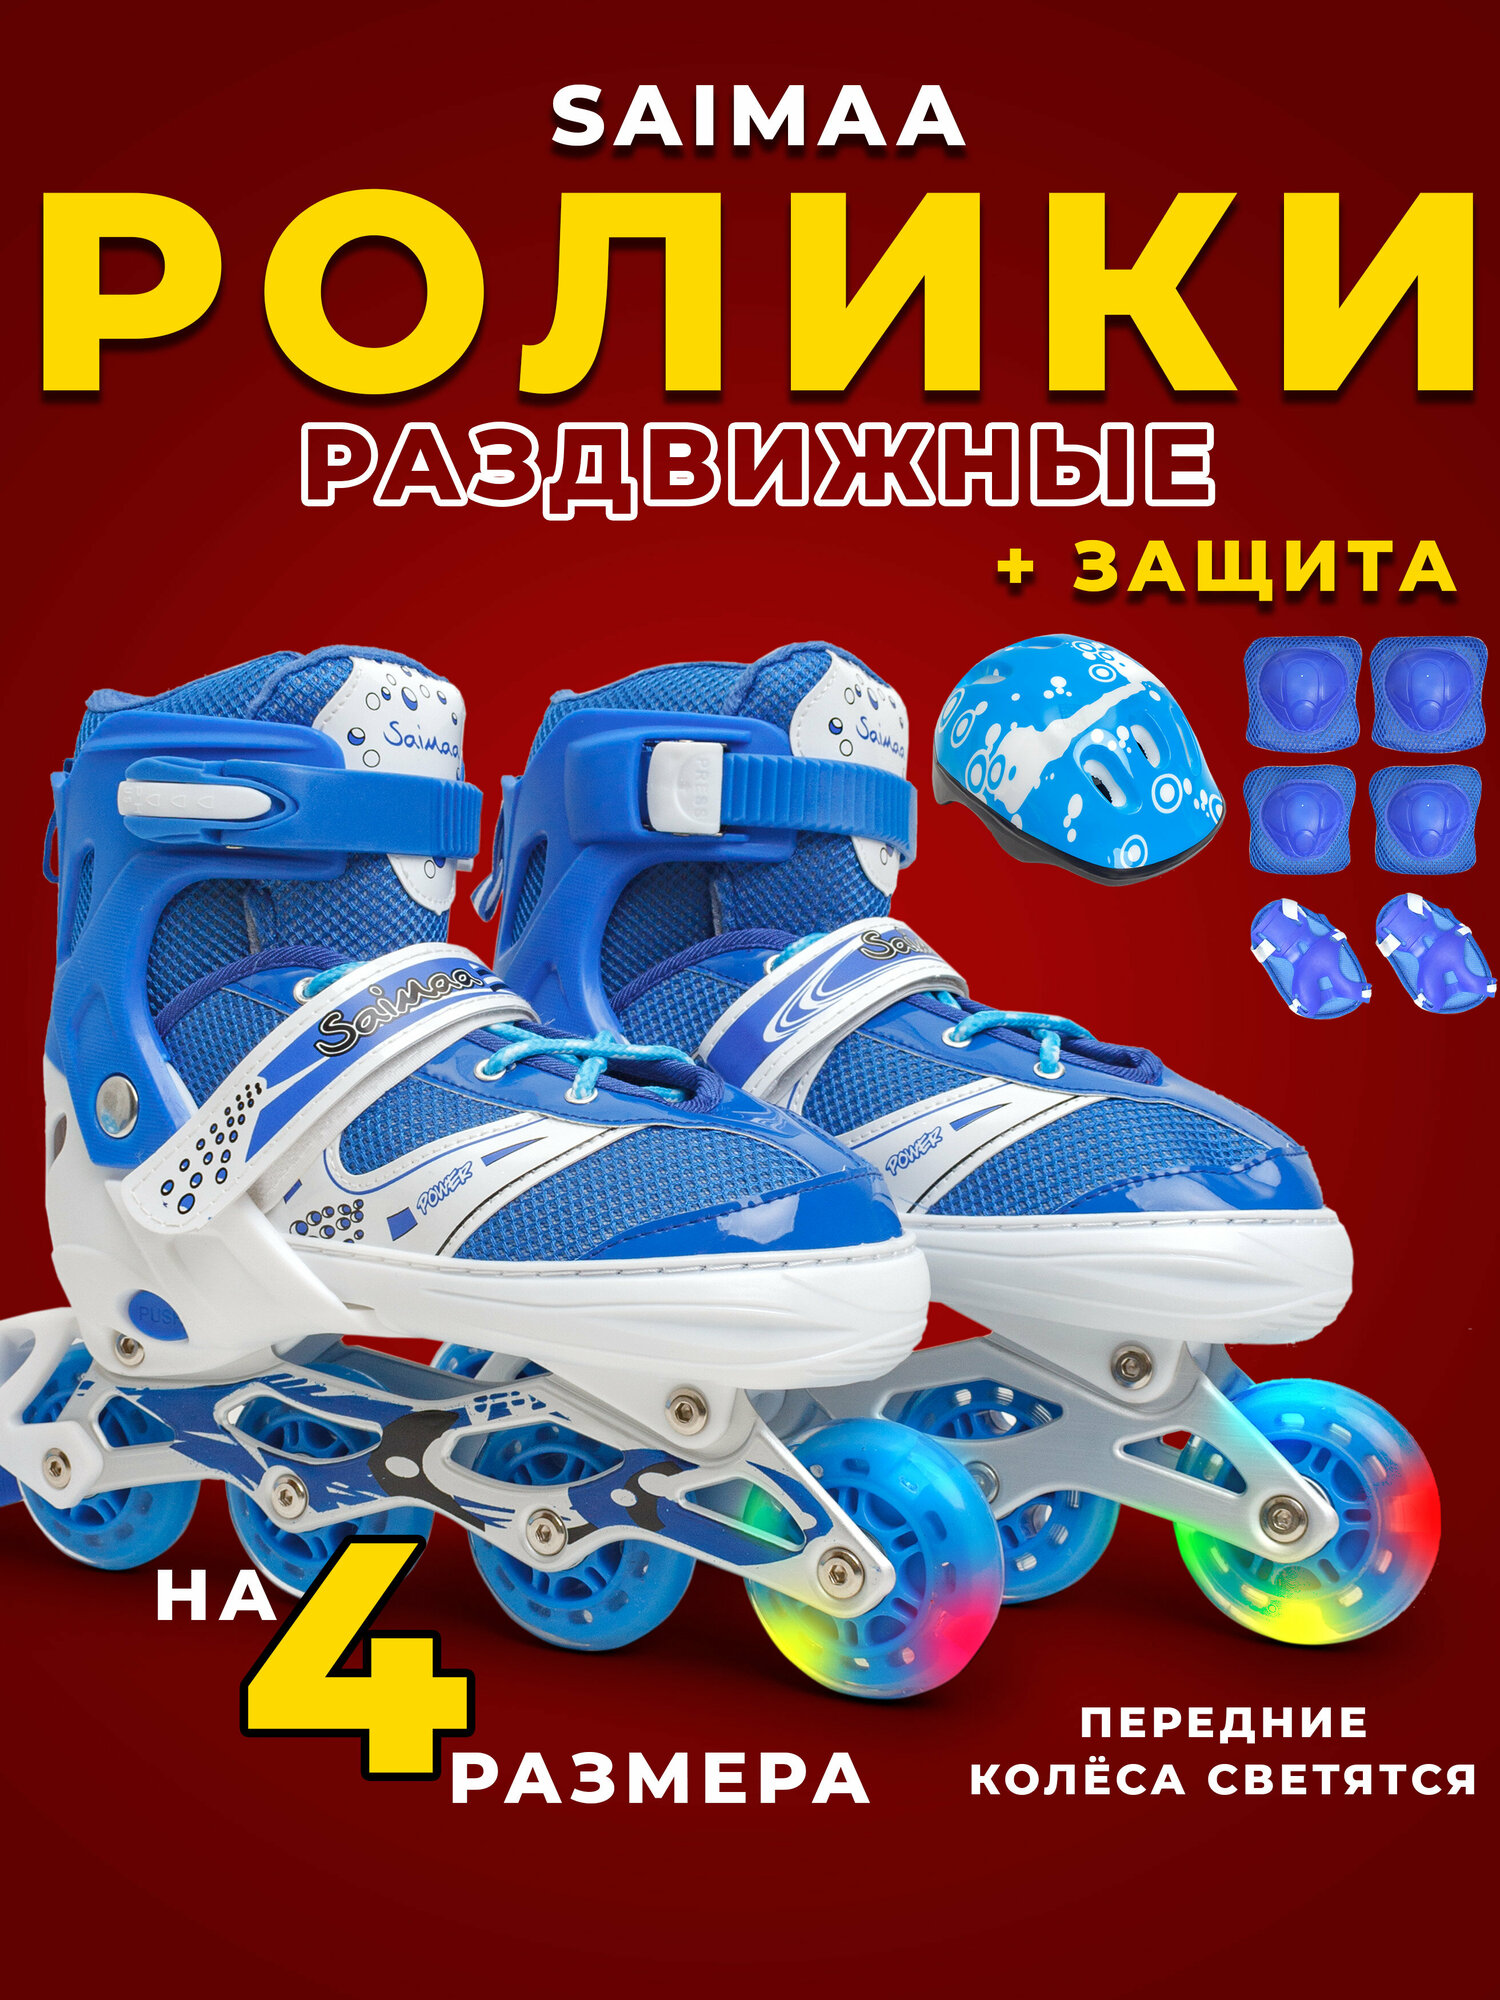 Роликовые коньки с защитой раздвижные детские, М (35-38) цвет синий